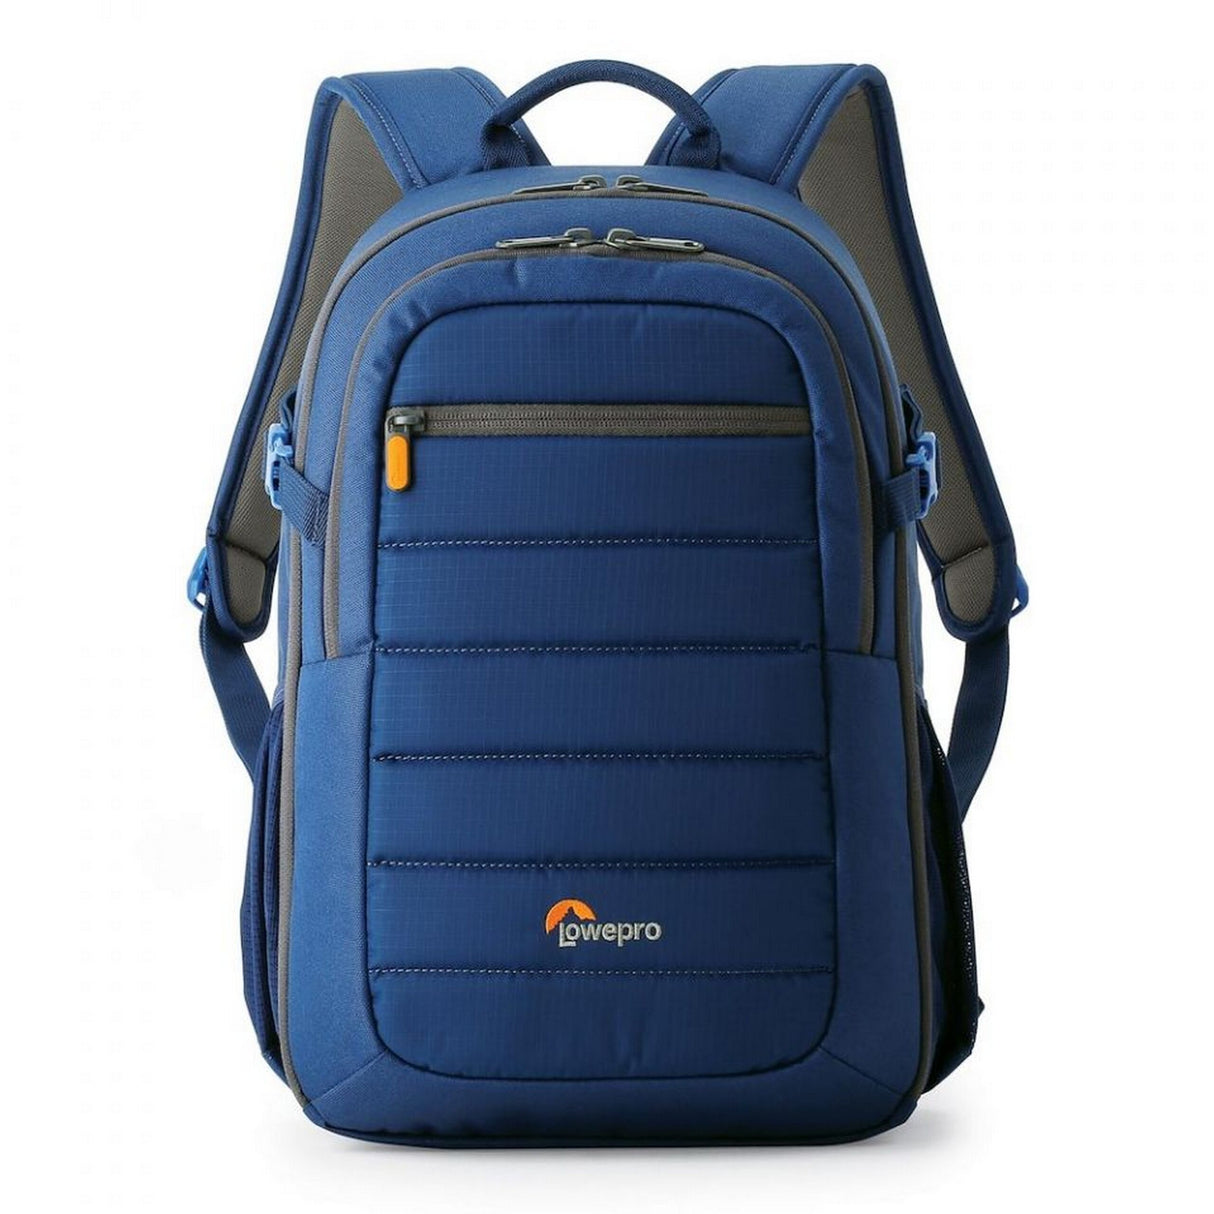 Lowepro Tahoe BP 150 Camera Backpack, Galaxy Blue